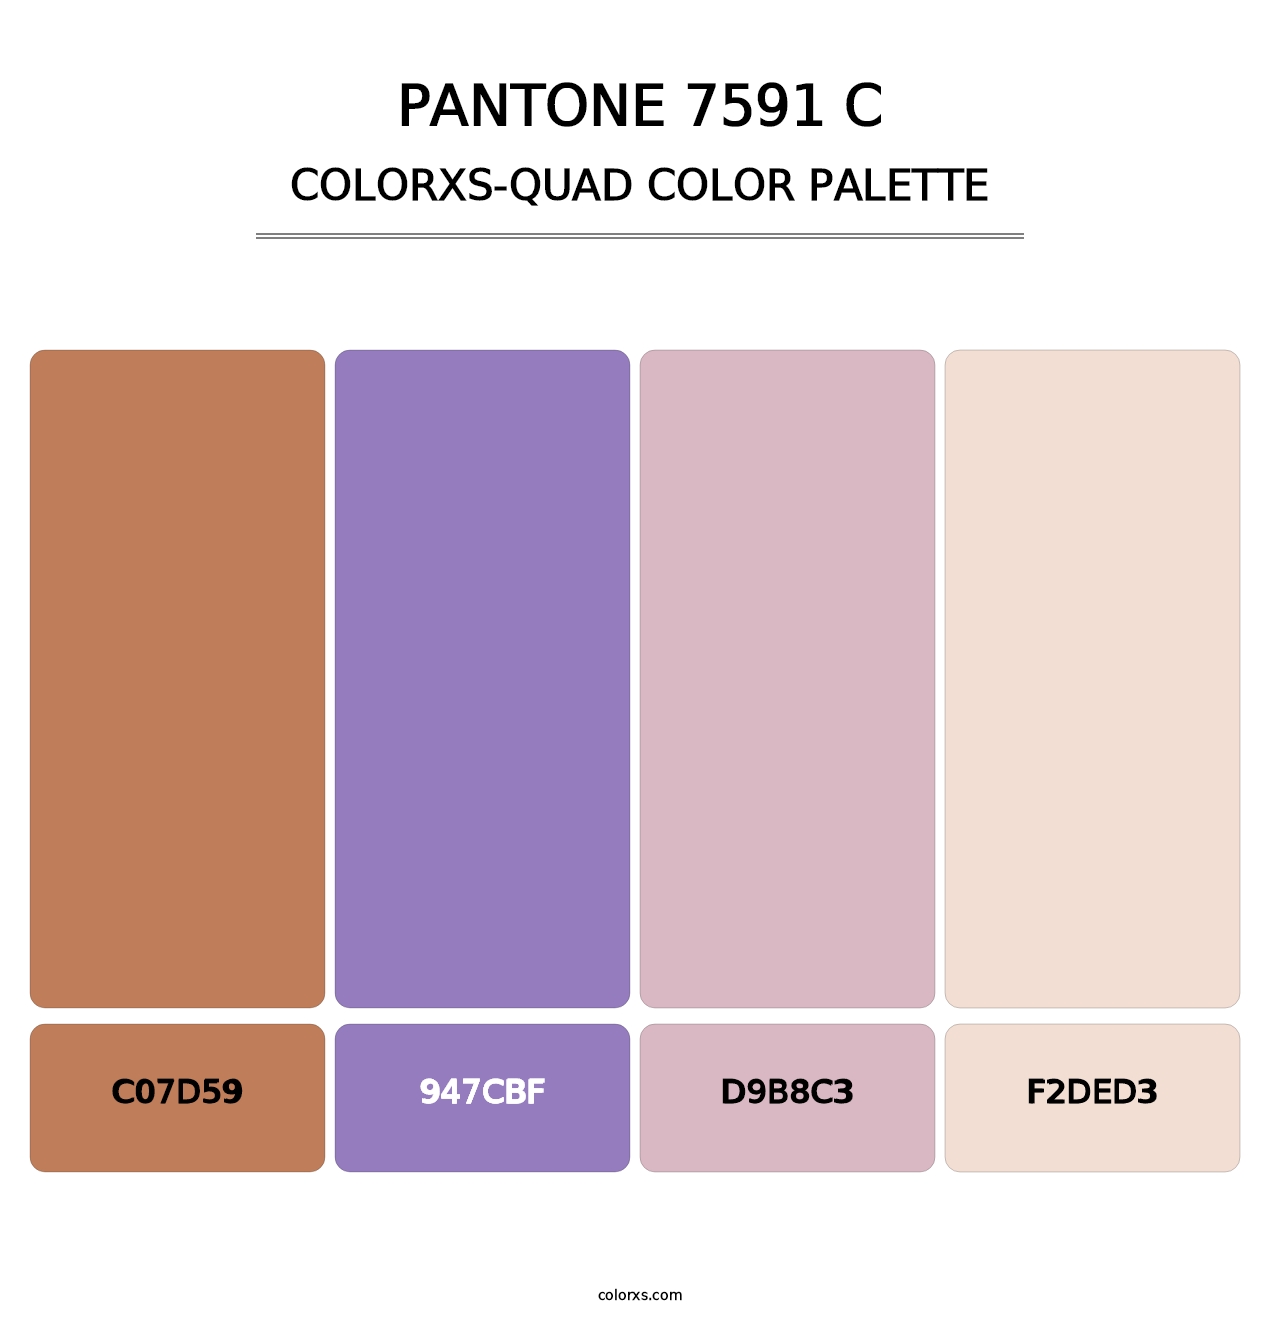 PANTONE 7591 C - Colorxs Quad Palette